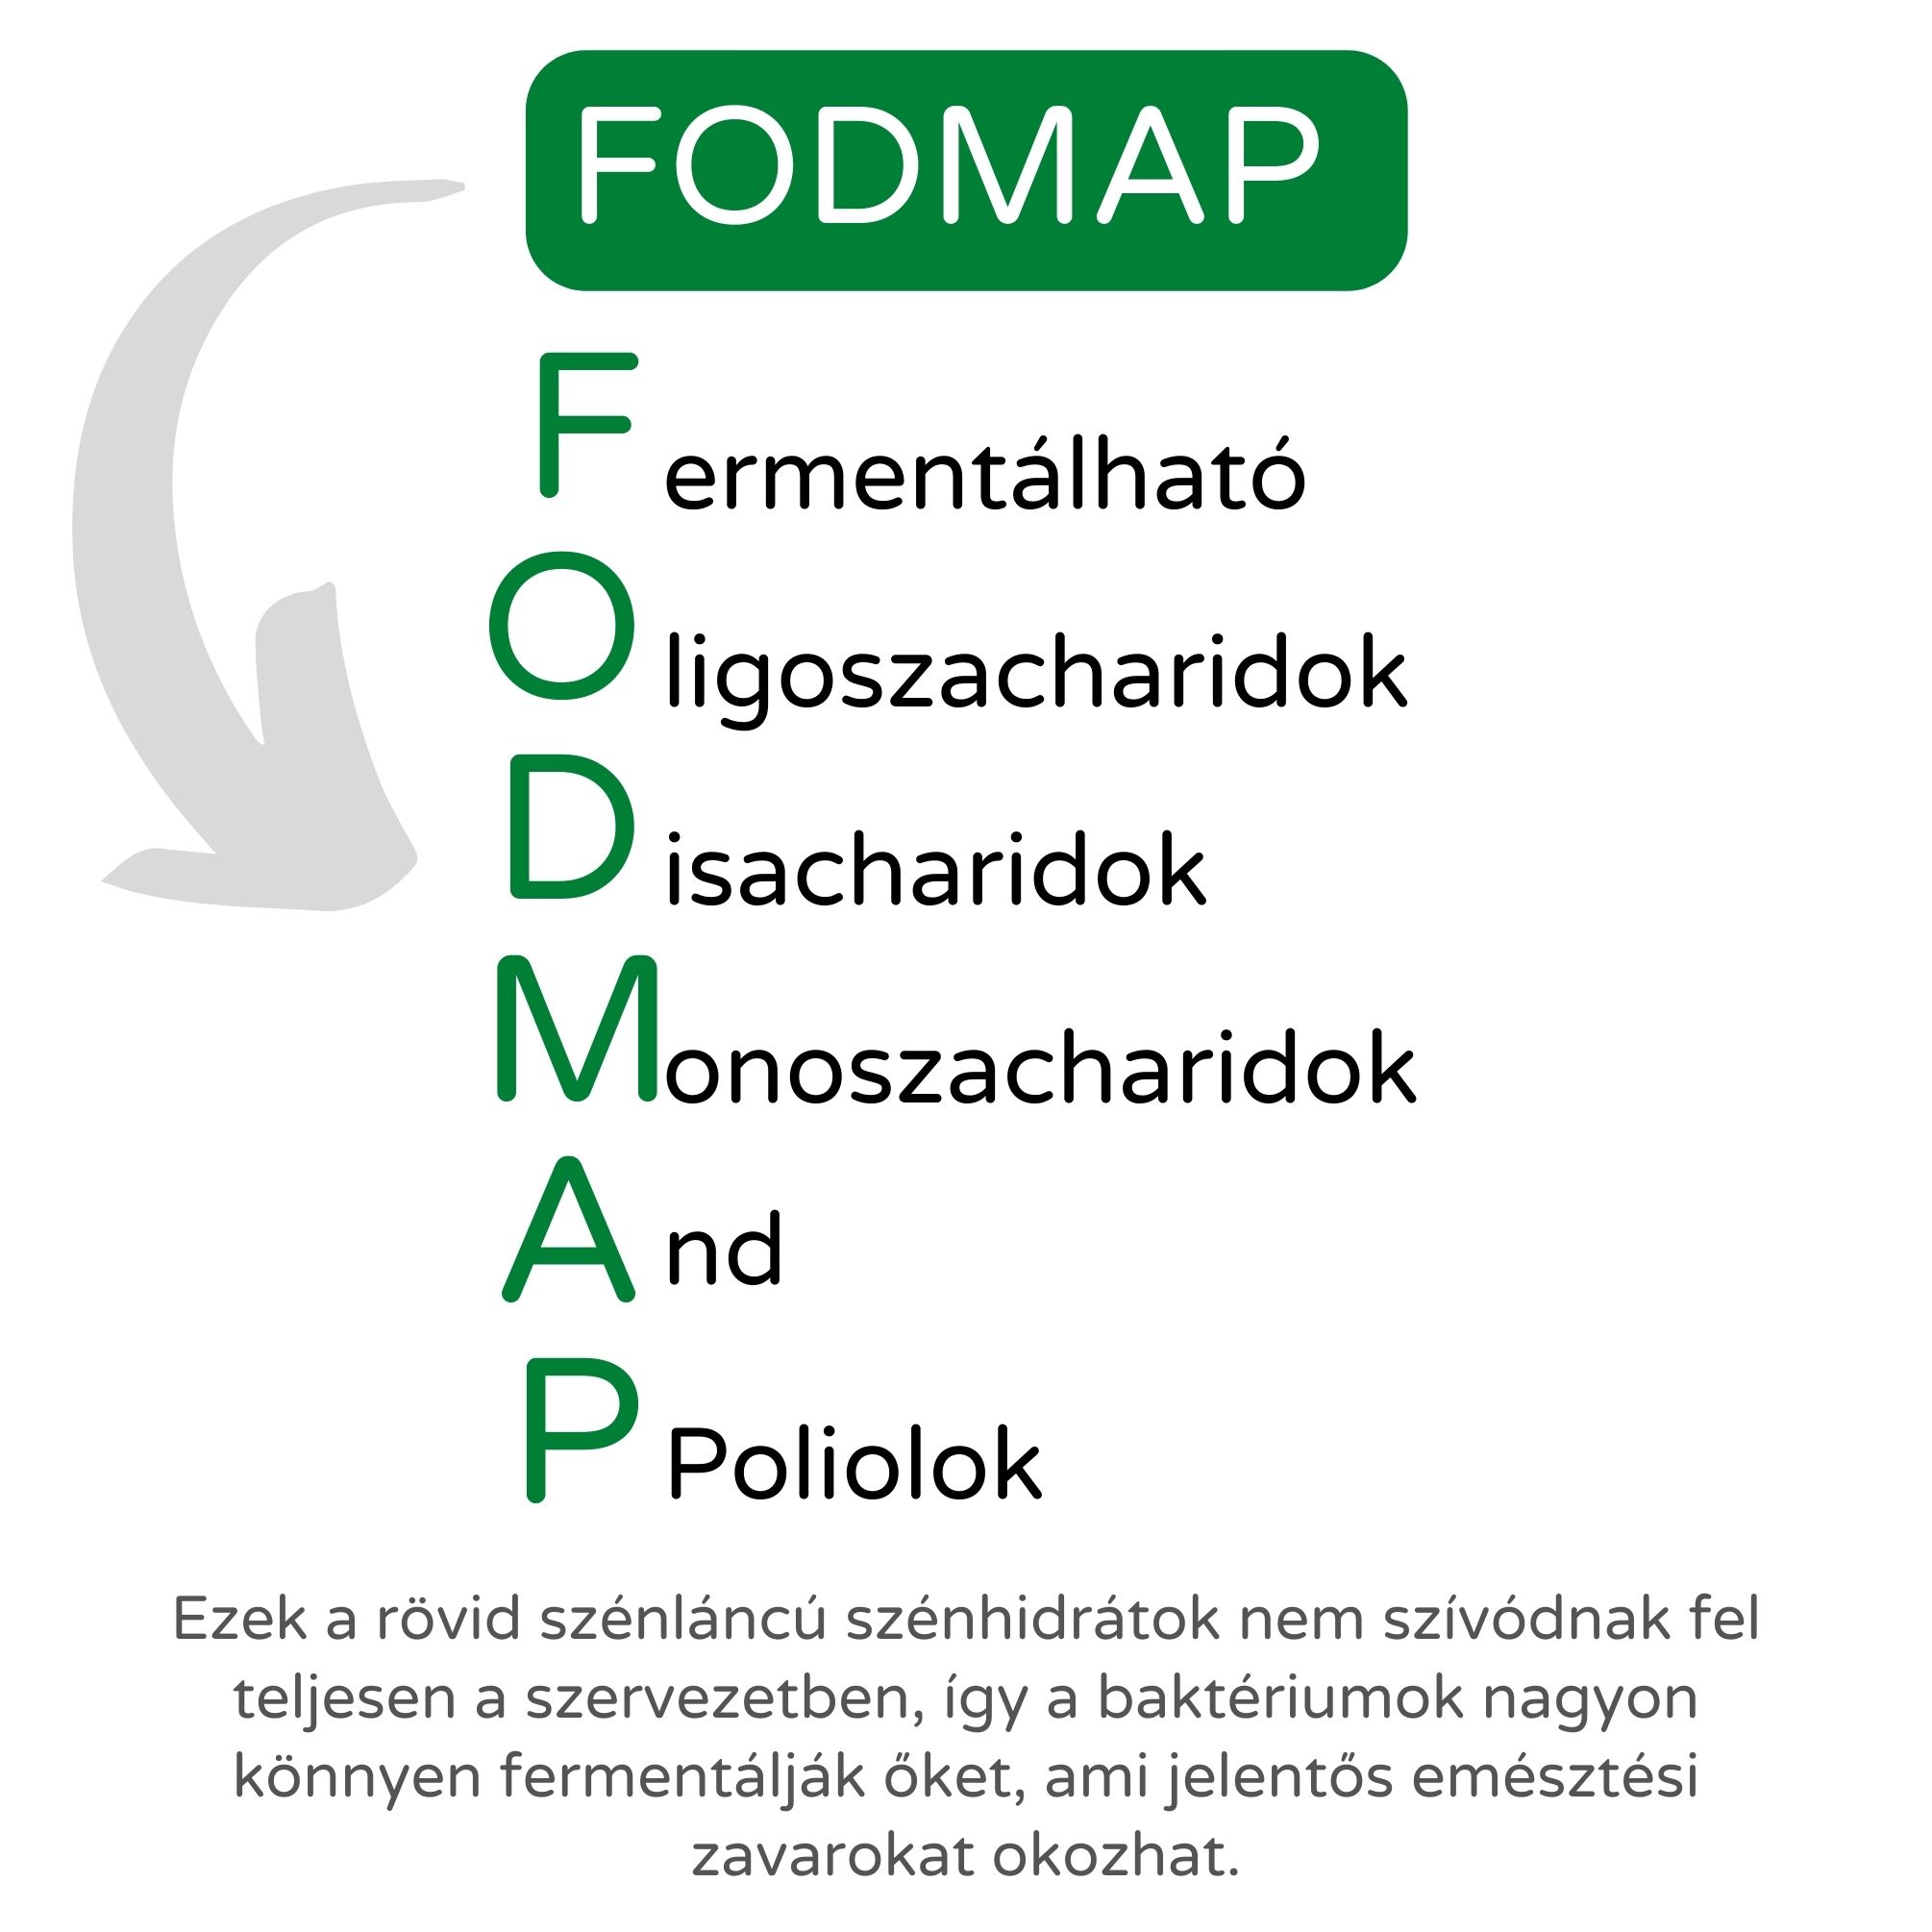 Mik azok a FODMAP-ok? Ezek a kulcsok az IBS kezelésében?